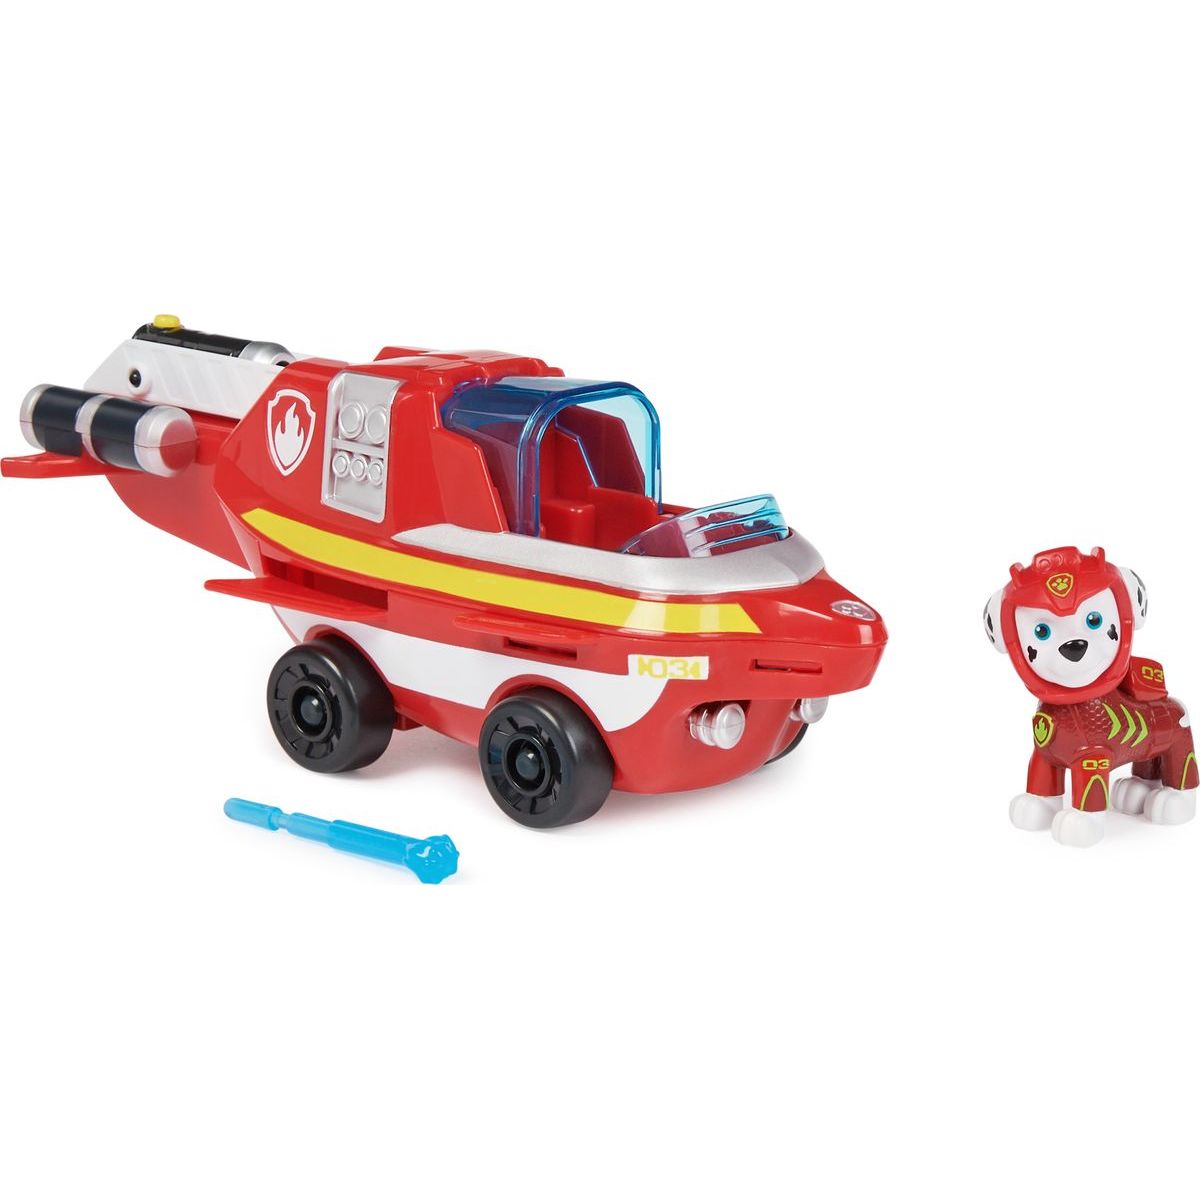 Paw Patrol Aqua vozidla s figurkou Marshall